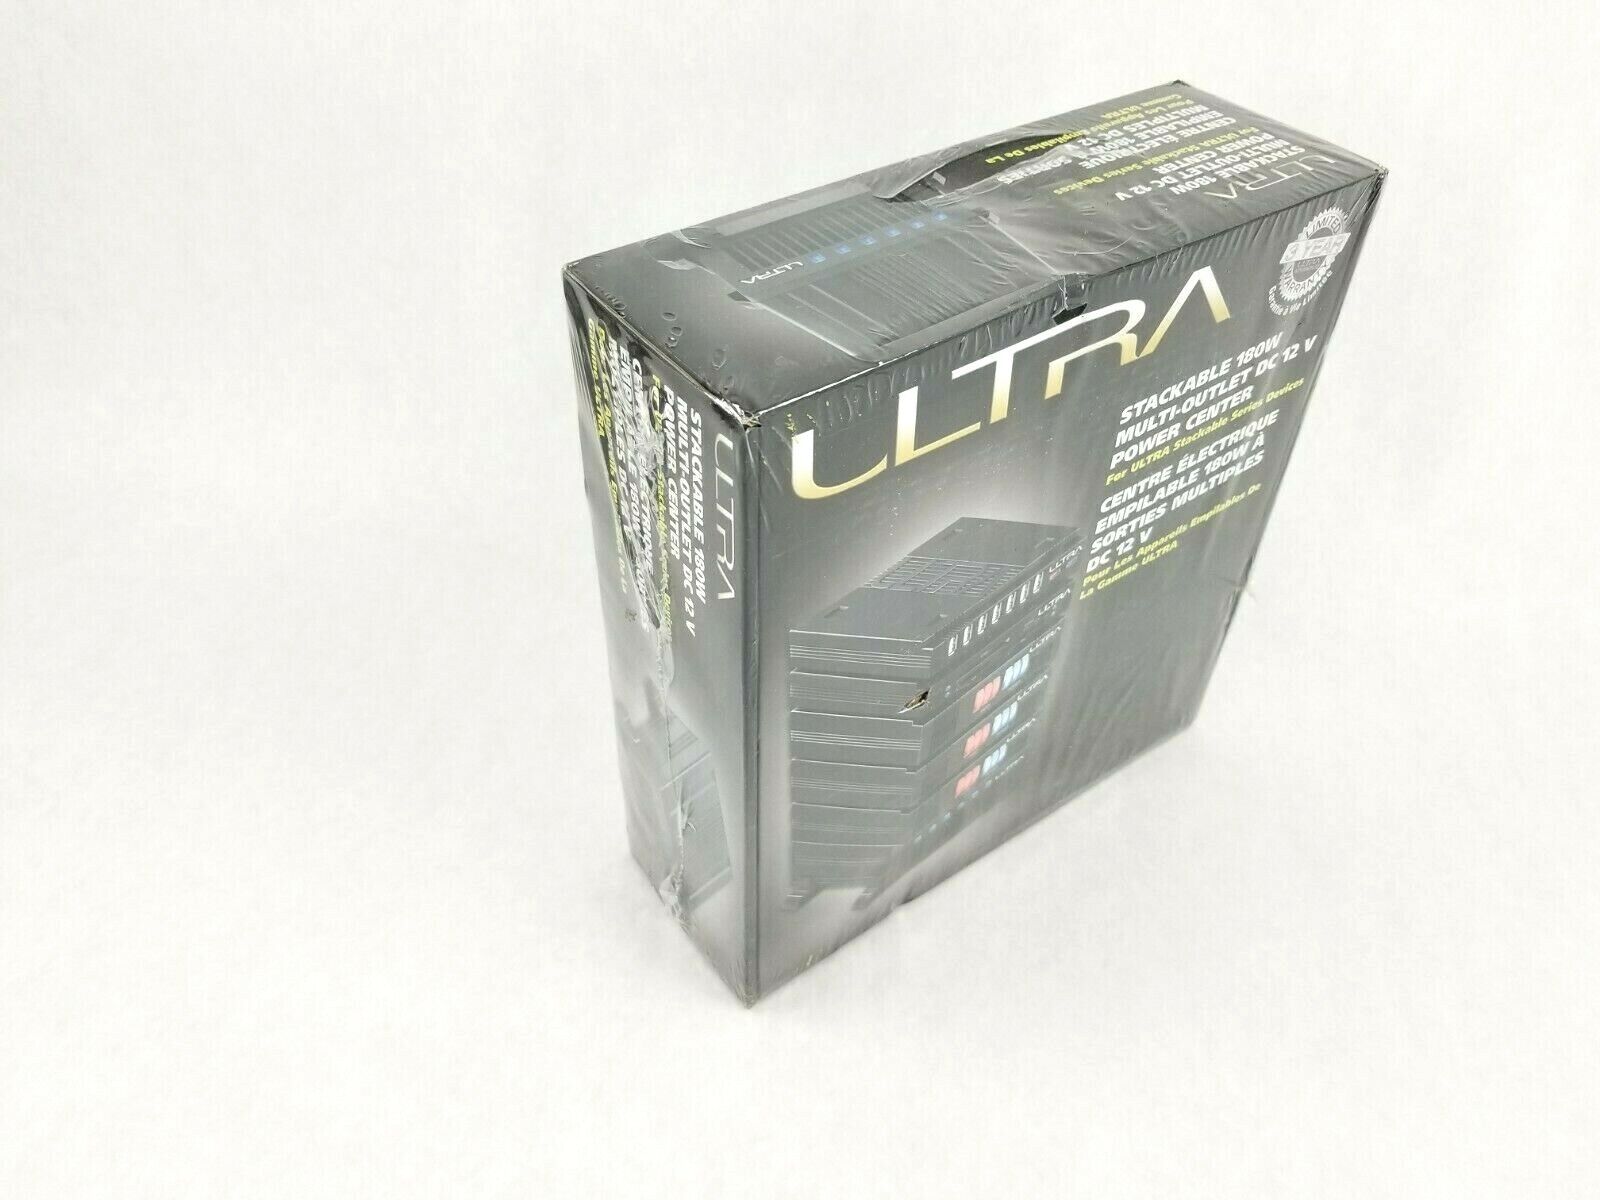 Ultra Stackable Power Center ULT33057 - Power Adapter - 180 Watt